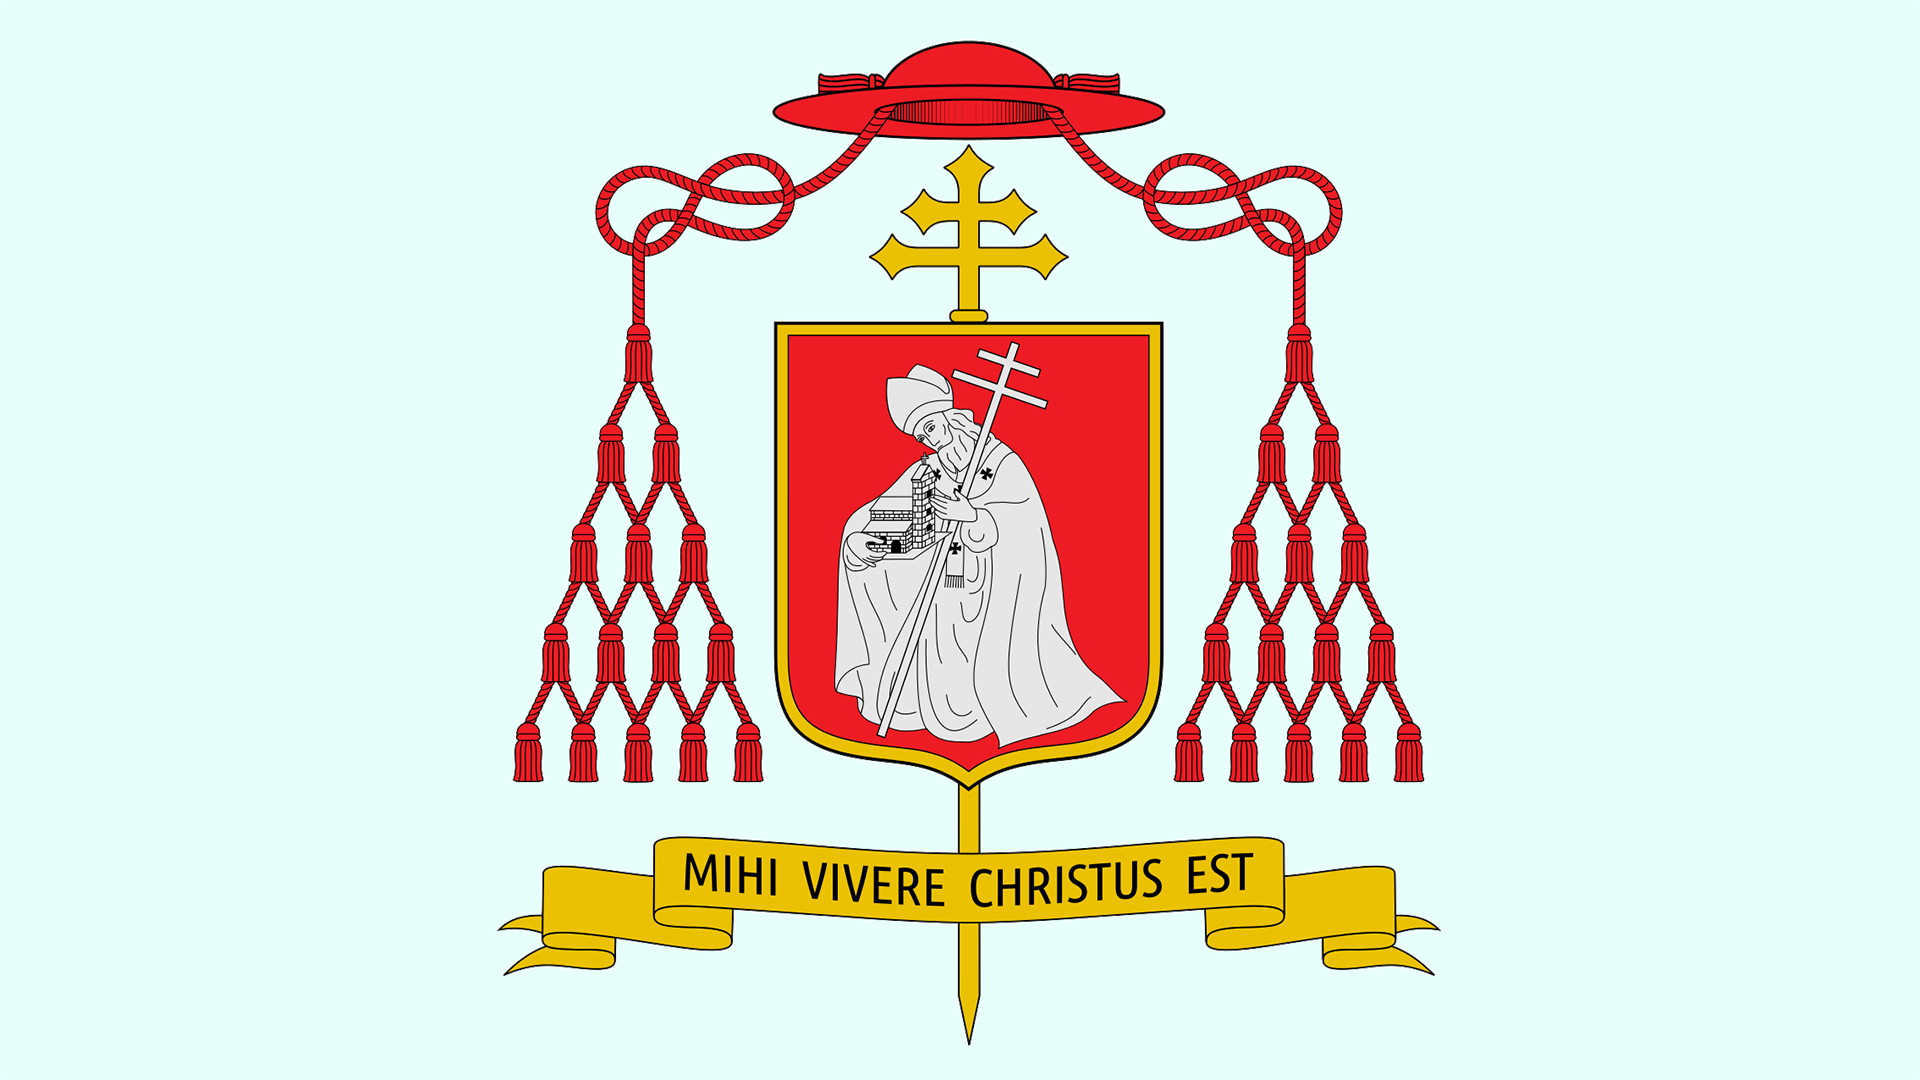 La devise de Marian Jaworski “Mihi vivere Christus est”, (le Christ vit en moi), l’a accompagné toute sa vie, a déclaré le pape | Wikimedia Common